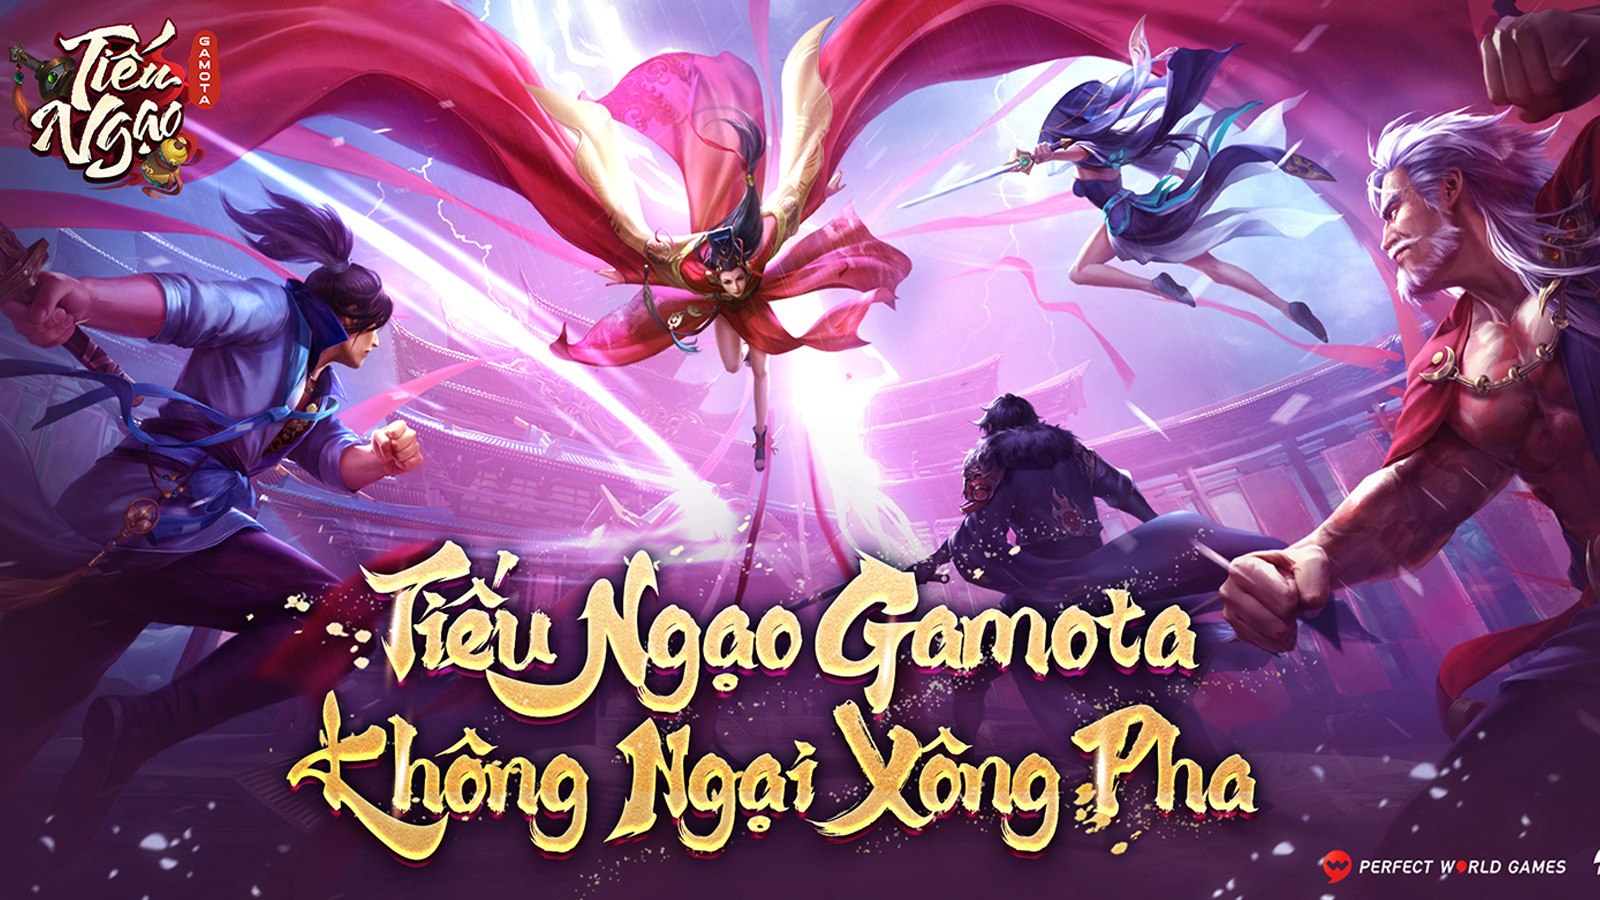 Tân Tiếu Ngạo VNG phát hành trở lại tại Việt Nam với tên mới Tiếu Ngạo - Gamota